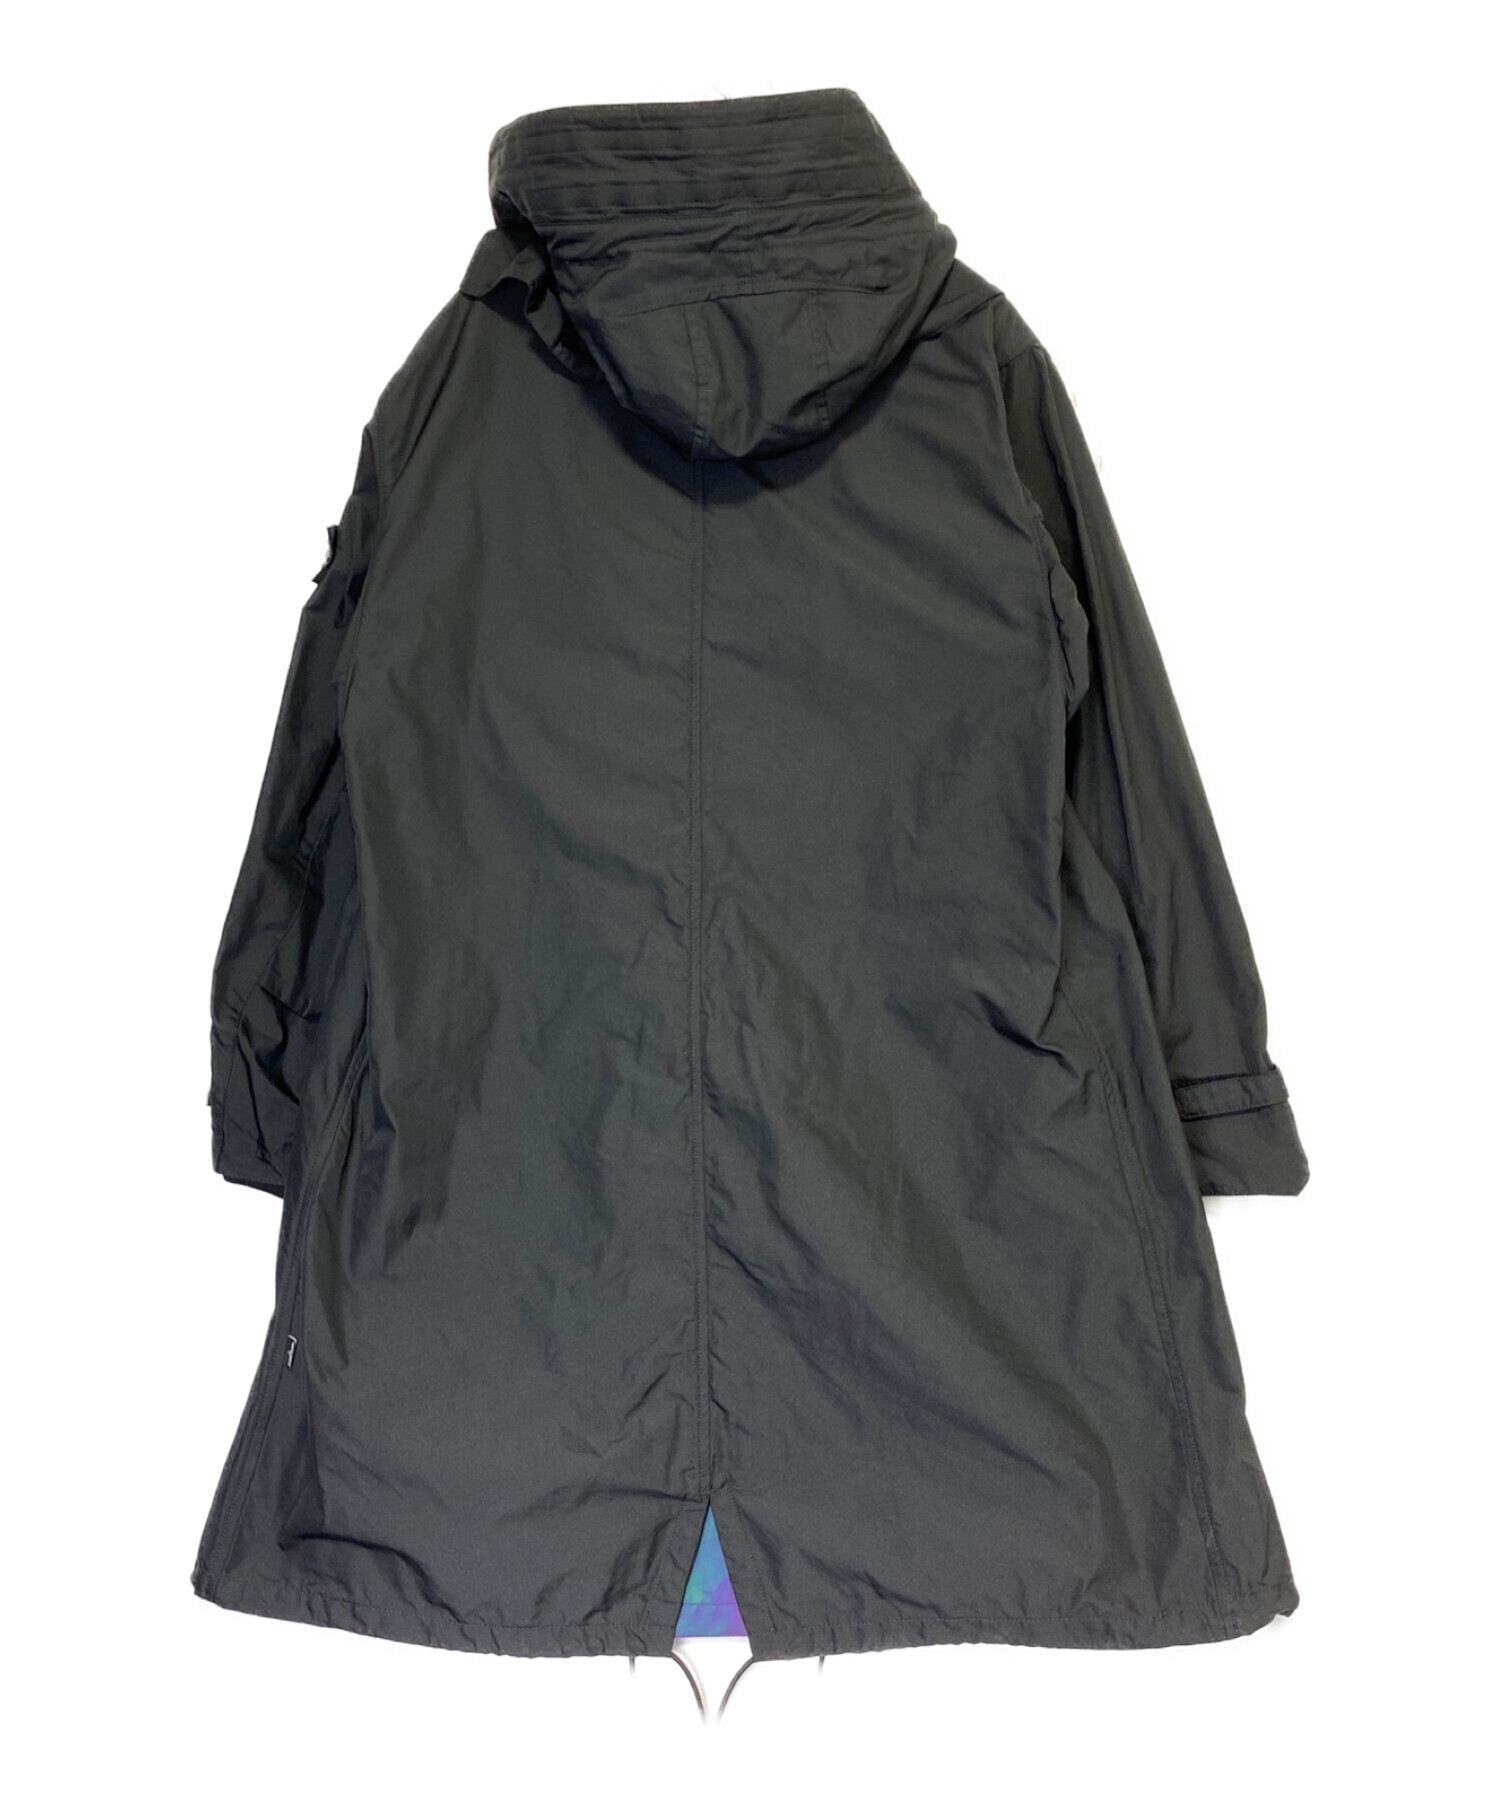 STONE ISLAND SHADOW PROJECT (ストーンアイランド シャドウプロジェクト) StealthParka Scarabeo  Jacket Musk ブラック サイズ:M